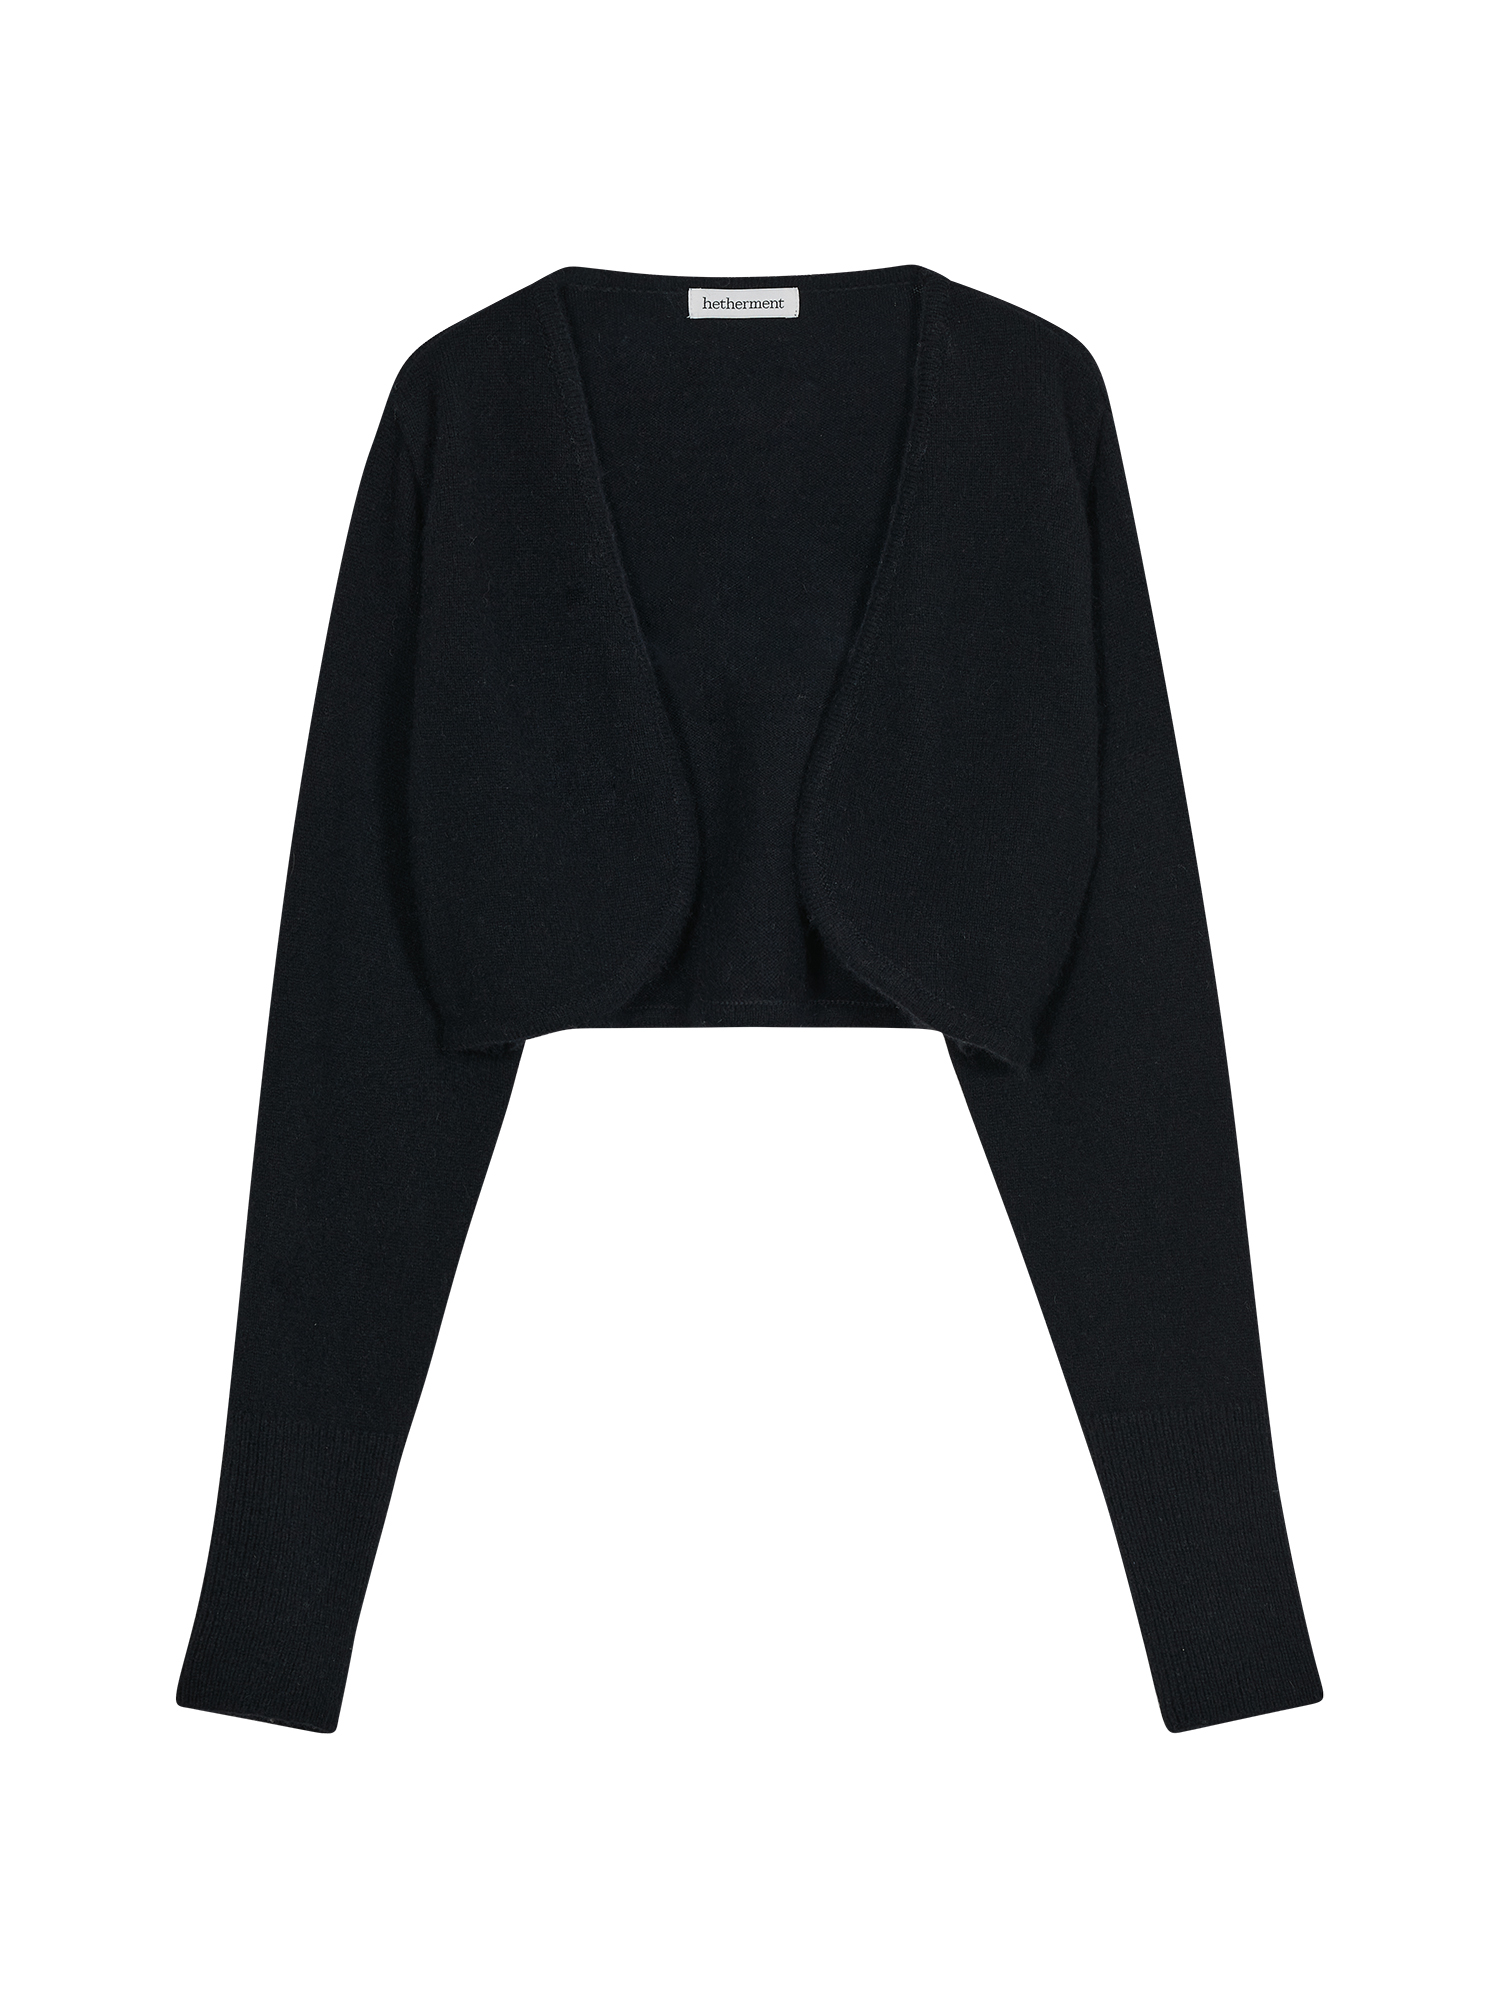 Knit Bolero Cardigan Set - Black